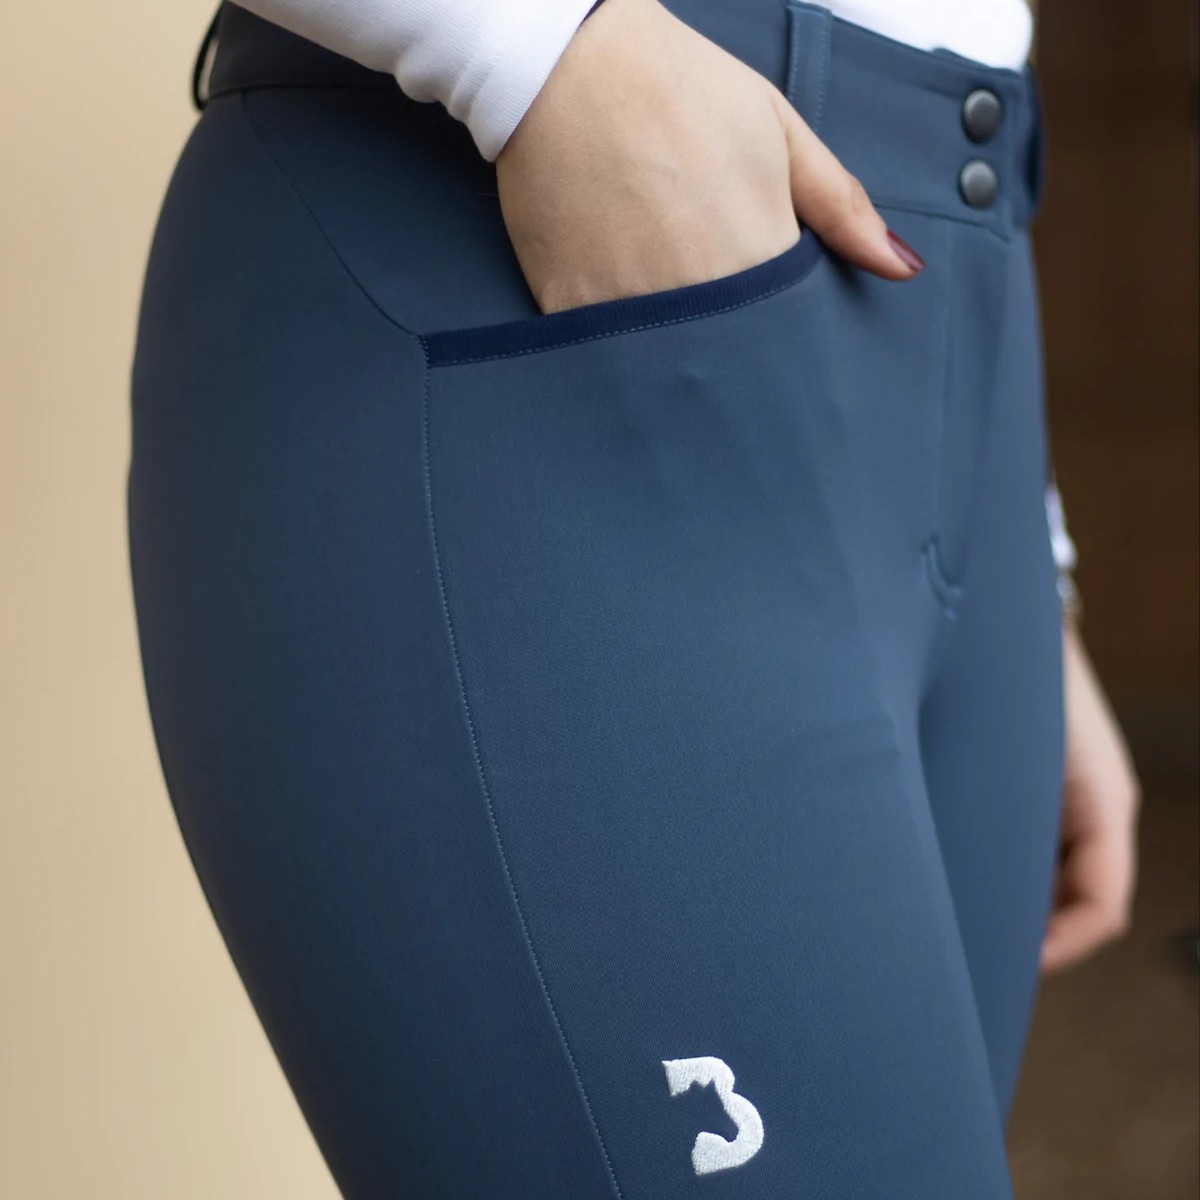 pantalon bleu basanne Sellerie En Cadence Montfort l'Amaury équitation textile cavalier durable écologie